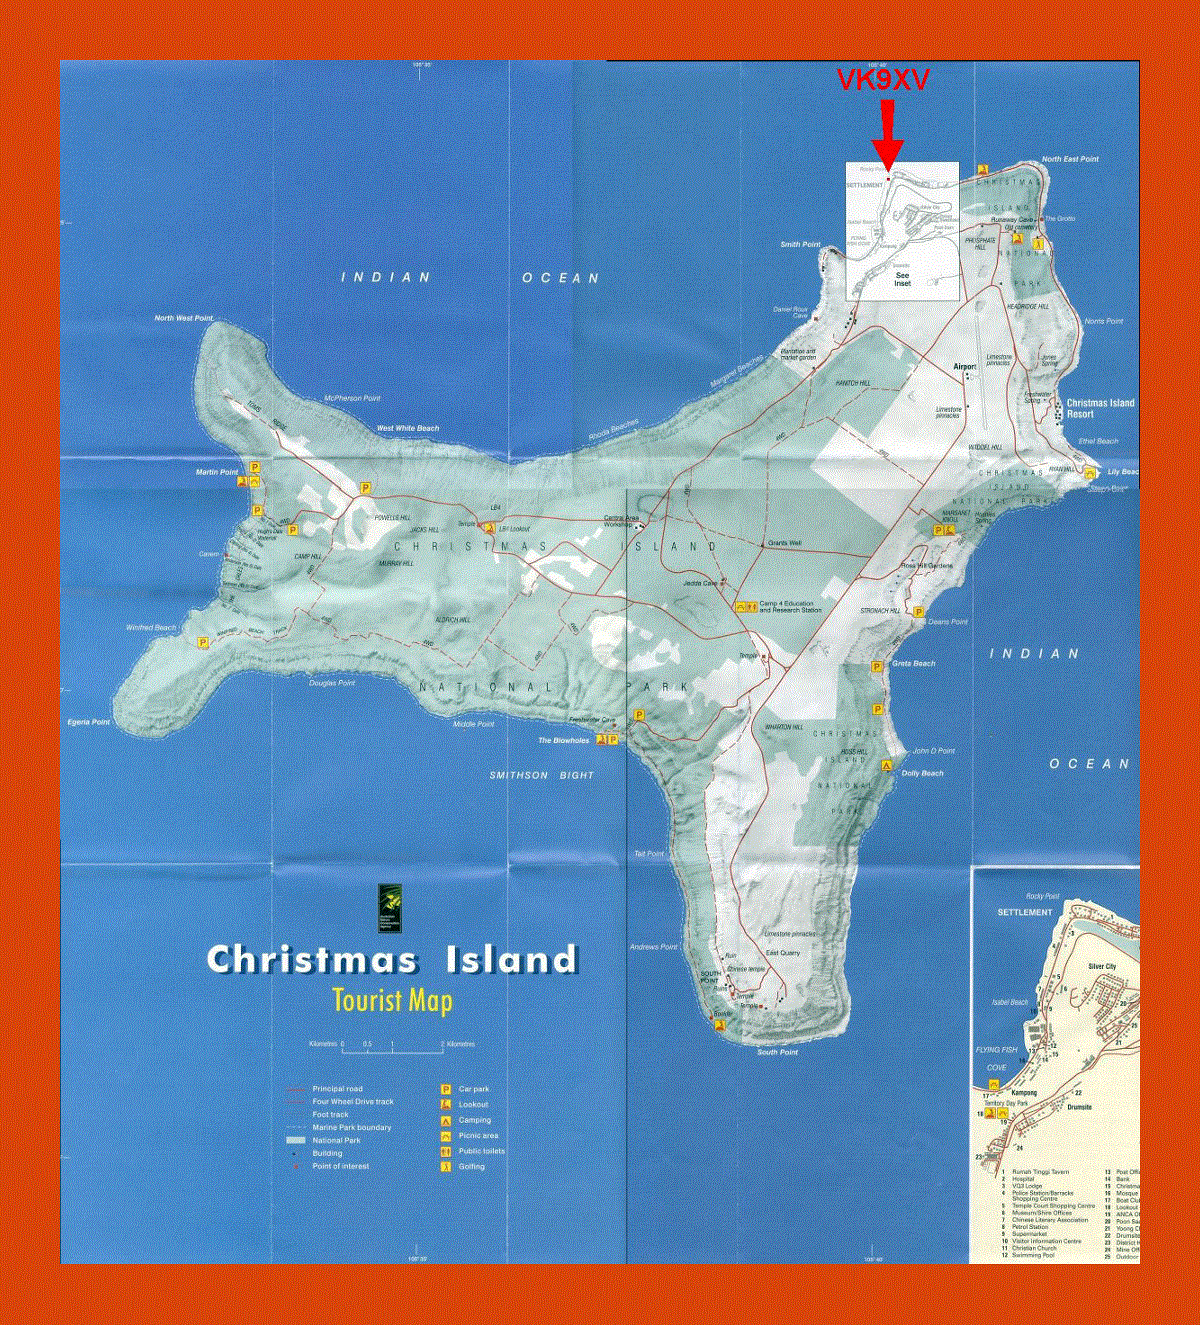 Tourist map of Christmas Island